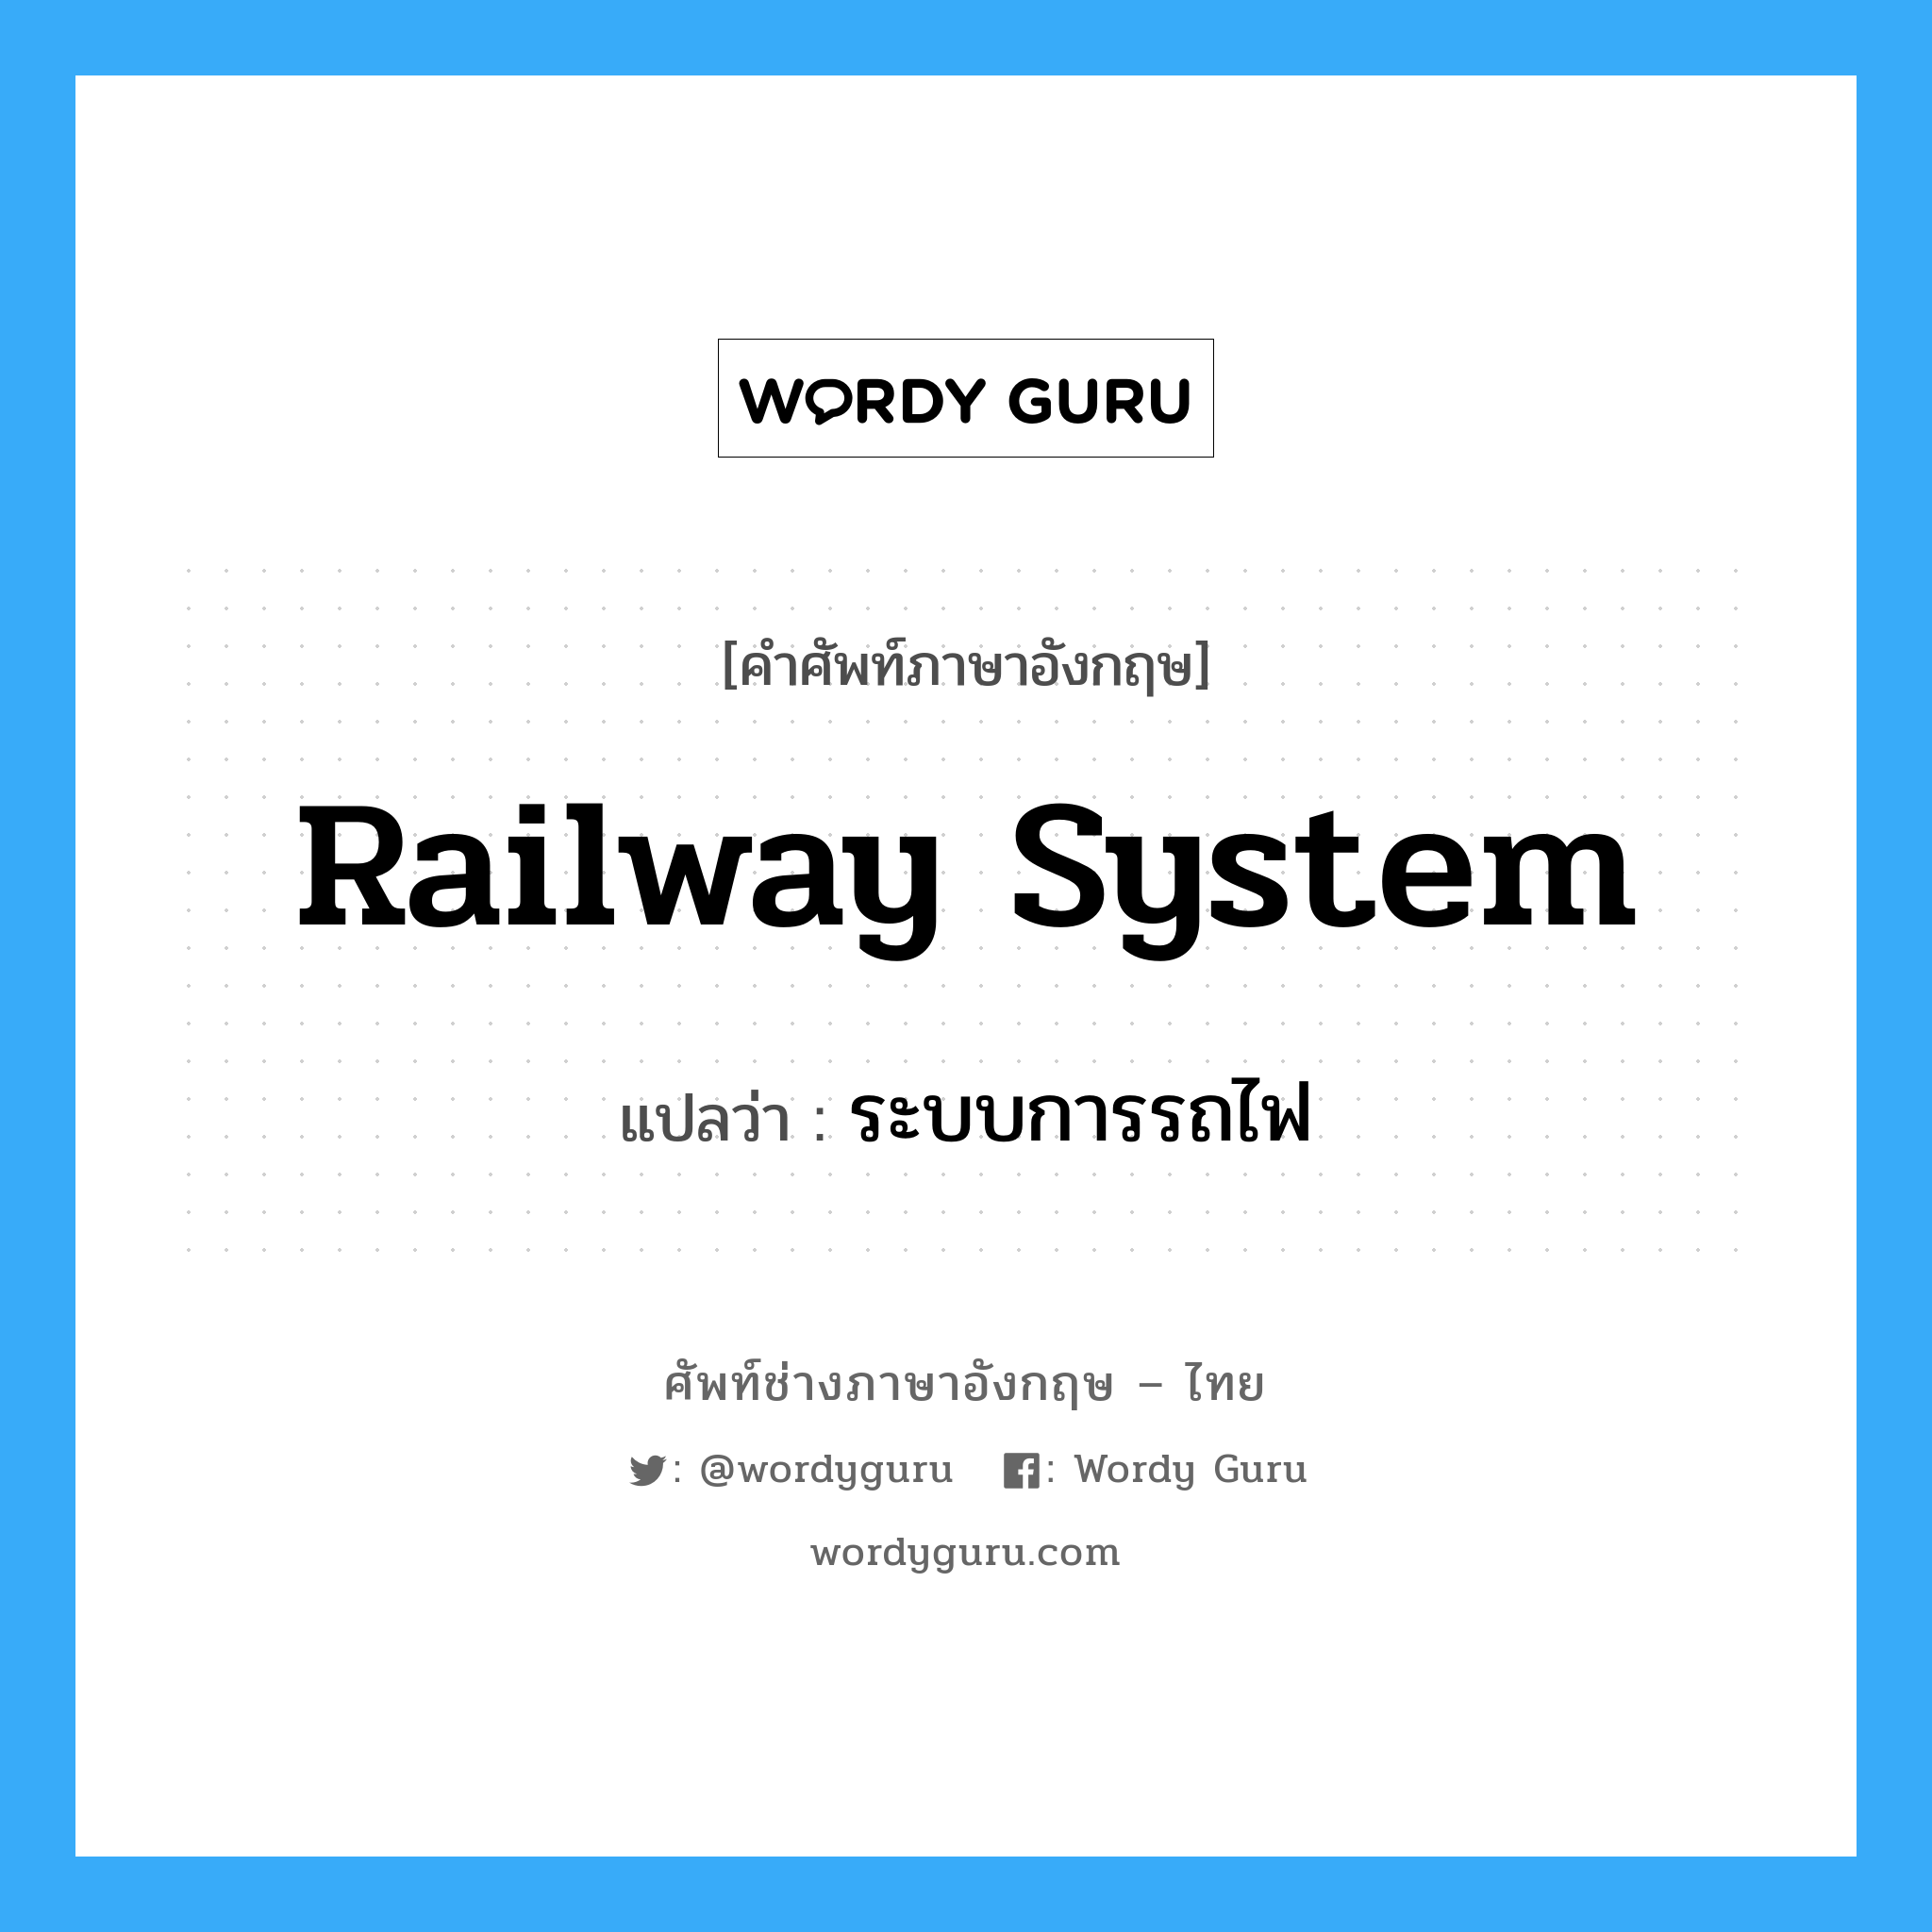 ระบบการรถไฟ ภาษาอังกฤษ?, คำศัพท์ช่างภาษาอังกฤษ - ไทย ระบบการรถไฟ คำศัพท์ภาษาอังกฤษ ระบบการรถไฟ แปลว่า railway system